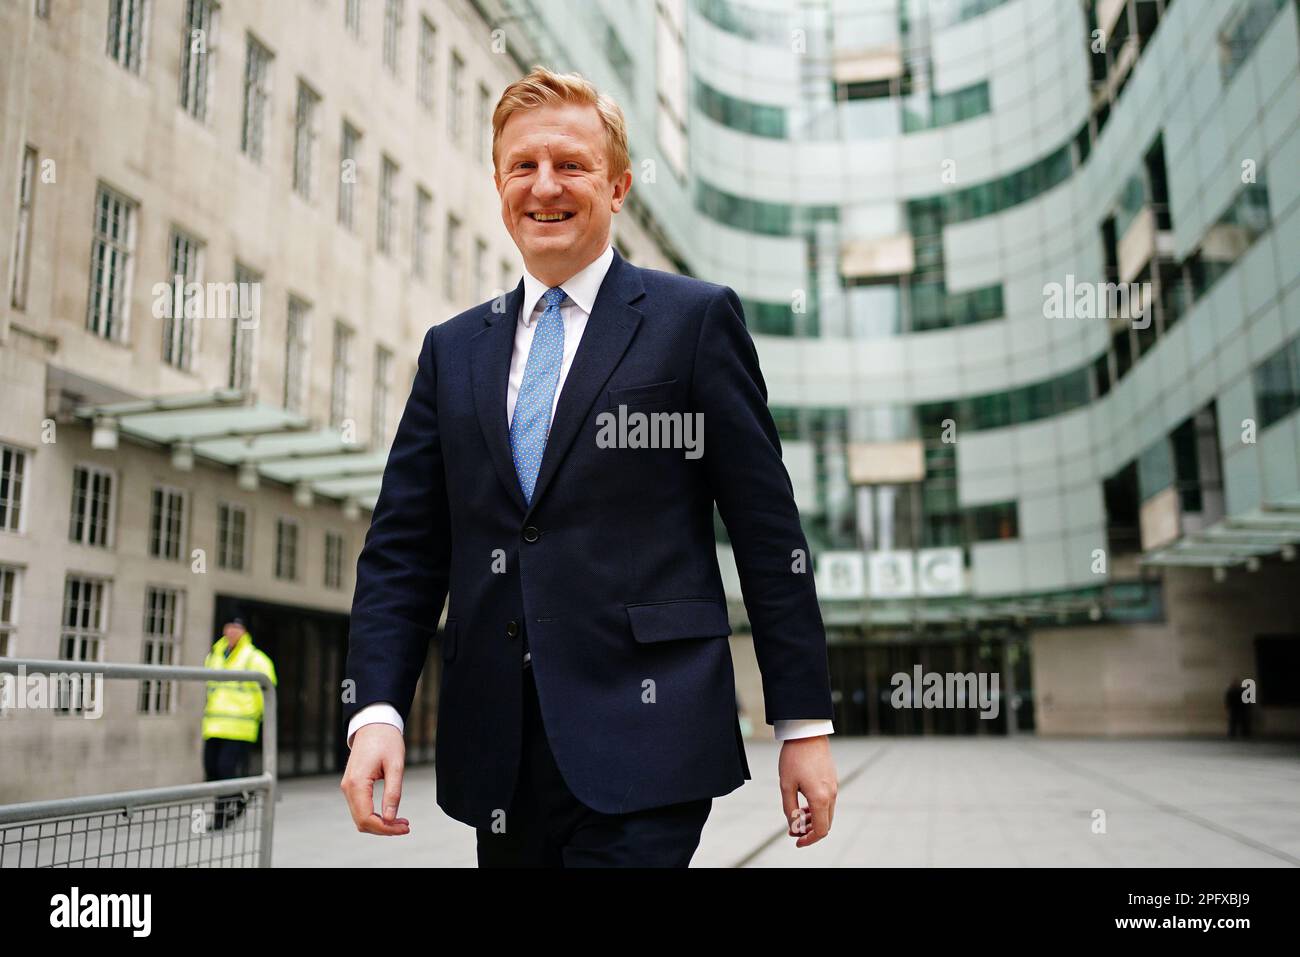 Chancelier du duché de Lancaster, Oliver Dowden sourit alors qu'il quitte la BBC Broadcasting House à Londres, après avoir comparu dimanche avec Laura Kuenssberg dans le programme d'actualité de la BBC One. Date de la photo: Dimanche 19 mars 2023. Banque D'Images